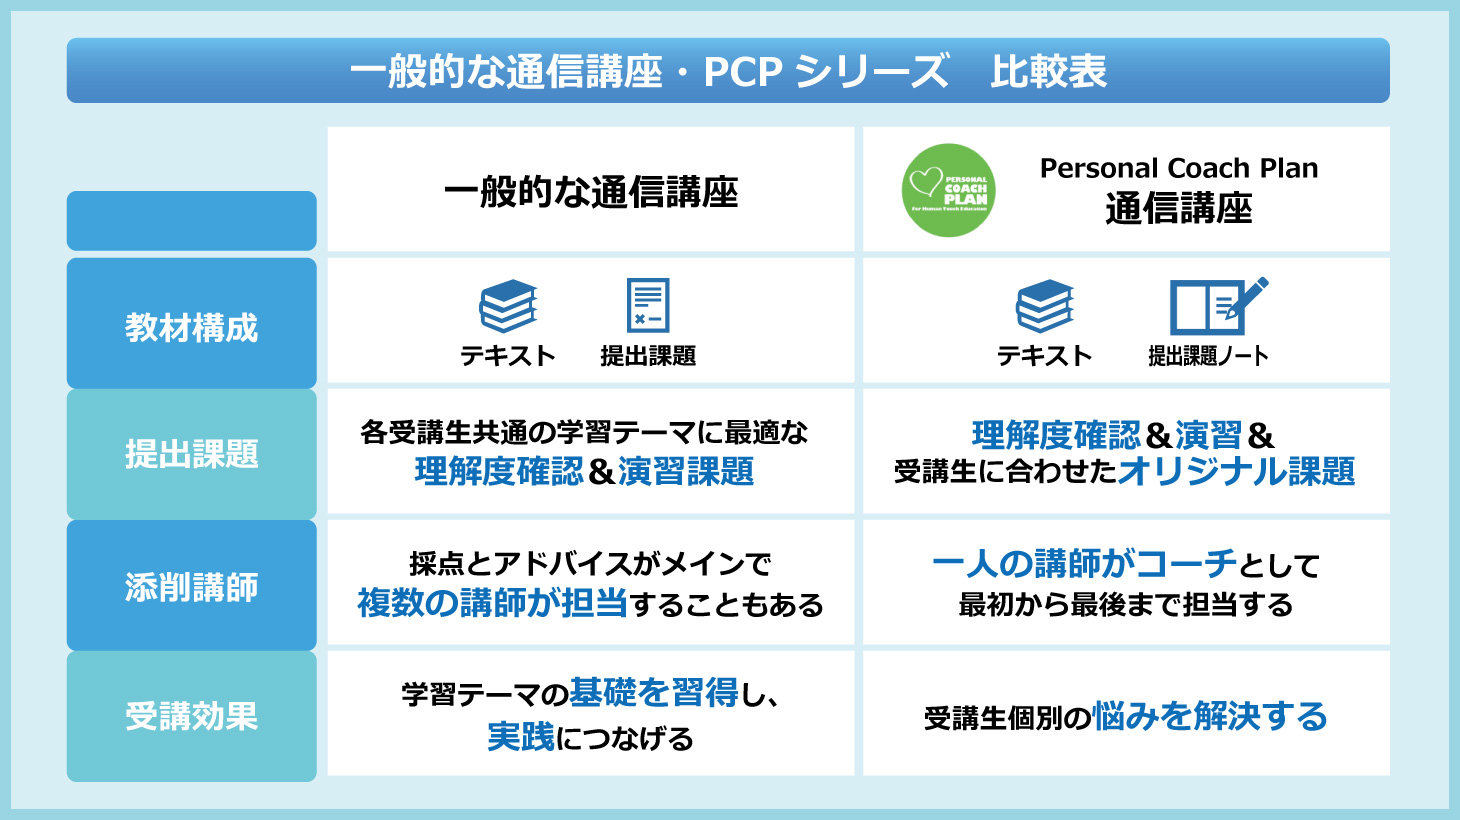 一般的な通信講座・PCPシリーズ 比較表